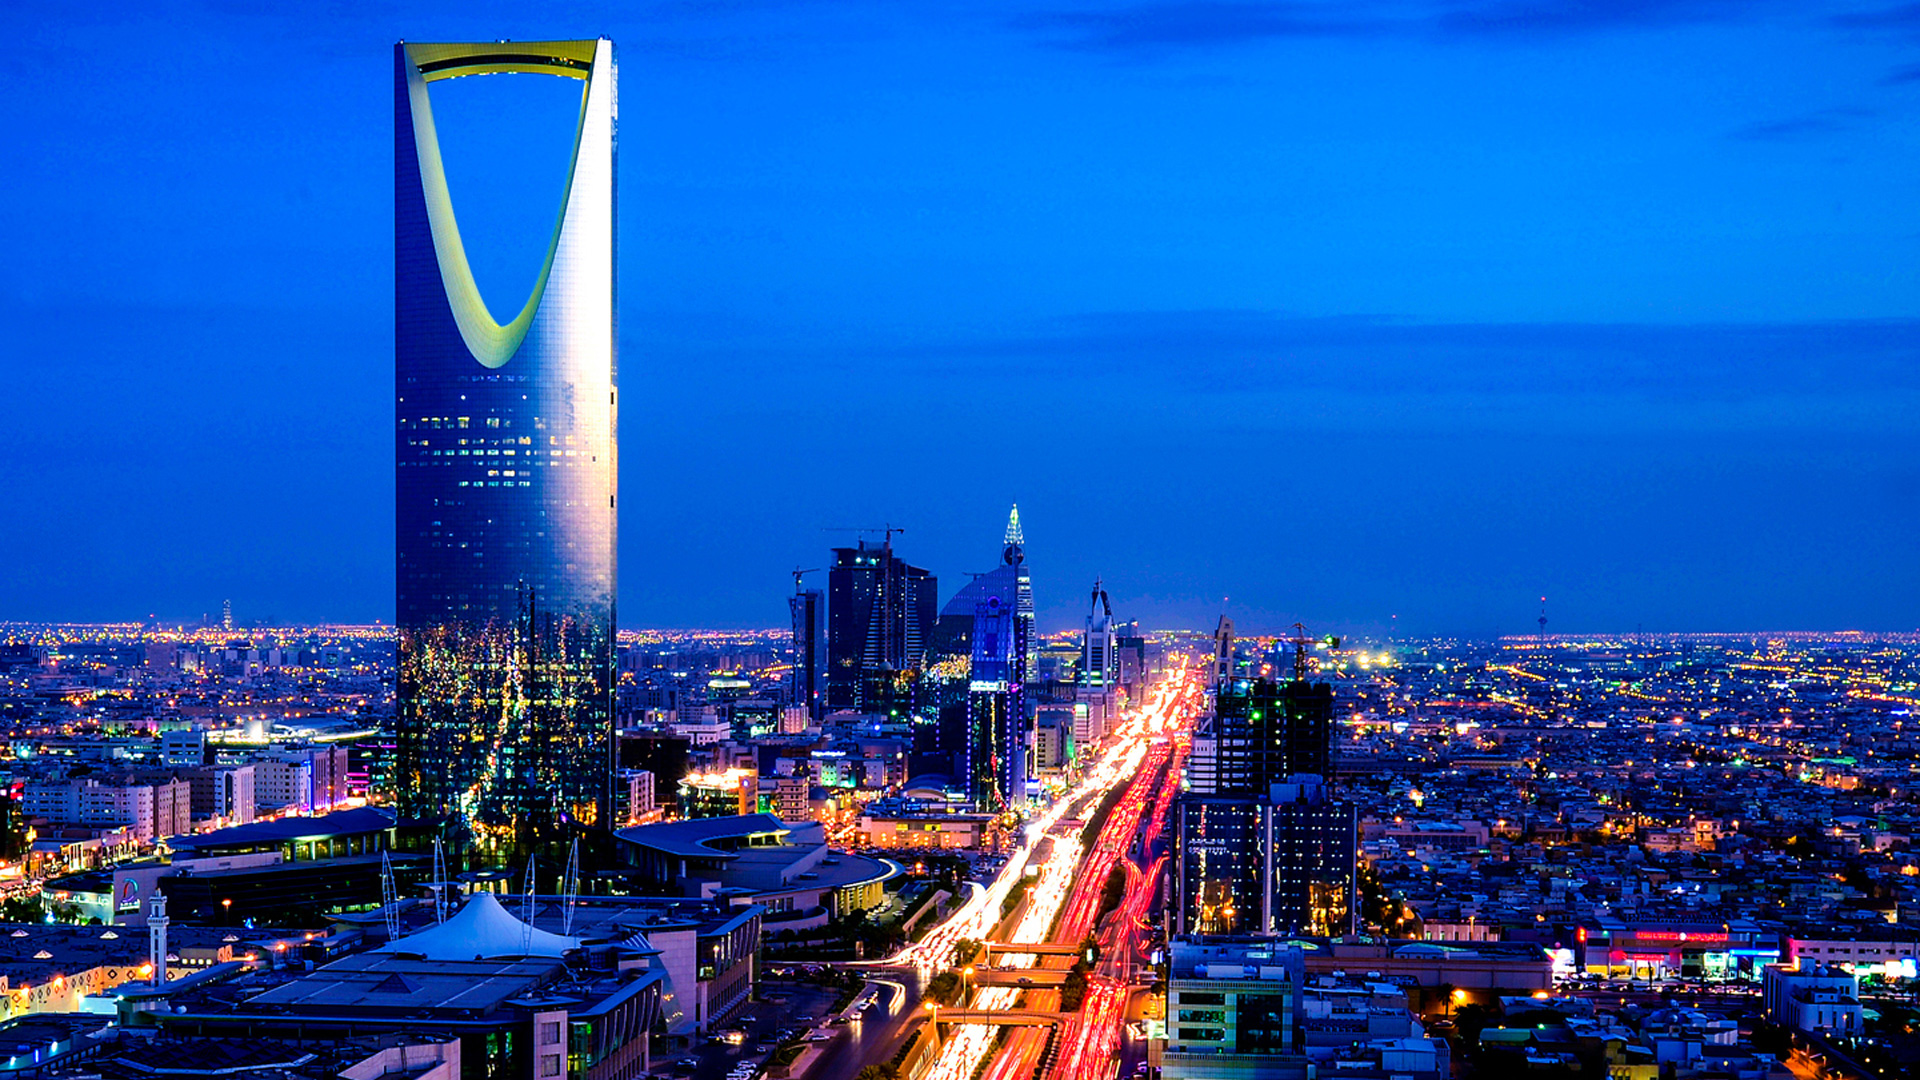 توقيع المملكة العربية السعودية وكوريا على برنامج إستراتيجي للملكية الفكرية